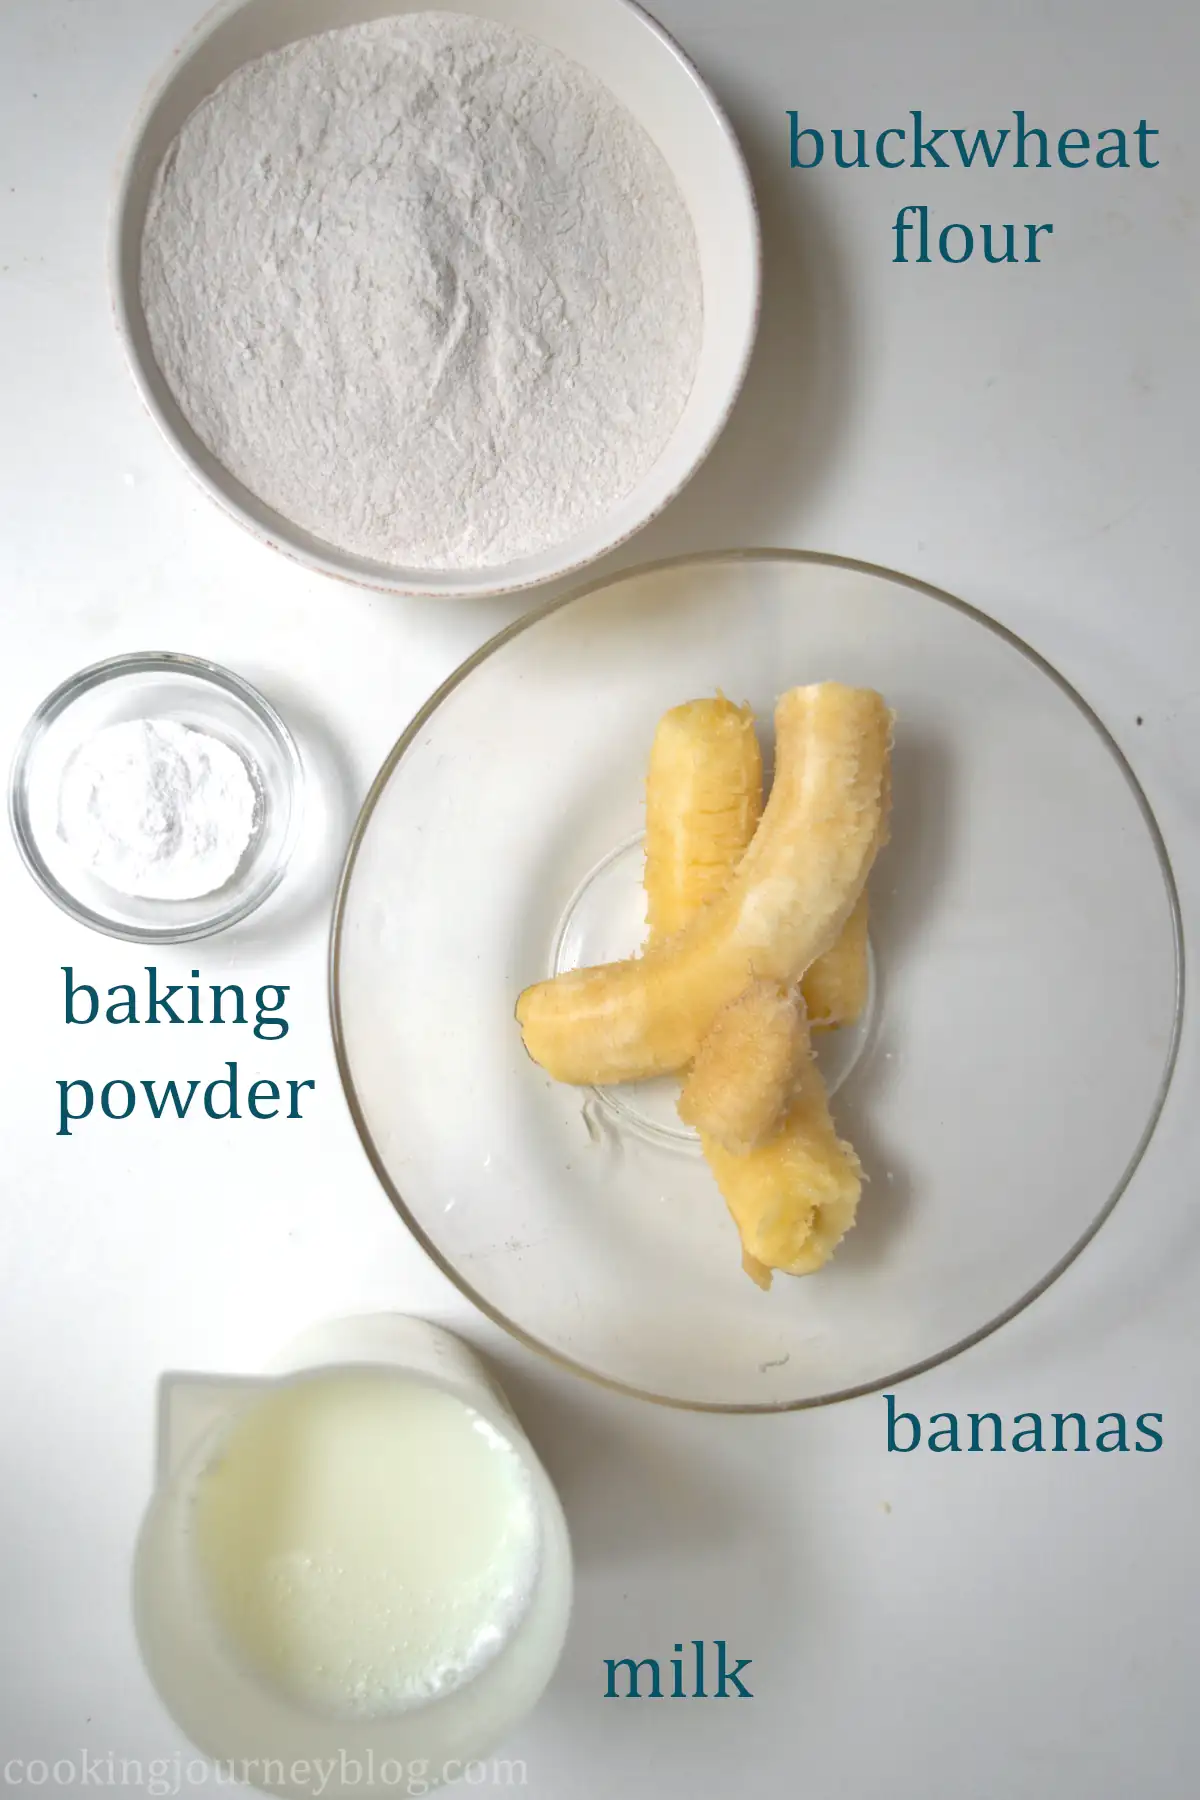 Ingredients for banana buckwheat pancakes: buckwheat flour, baking powder, bananas, milk